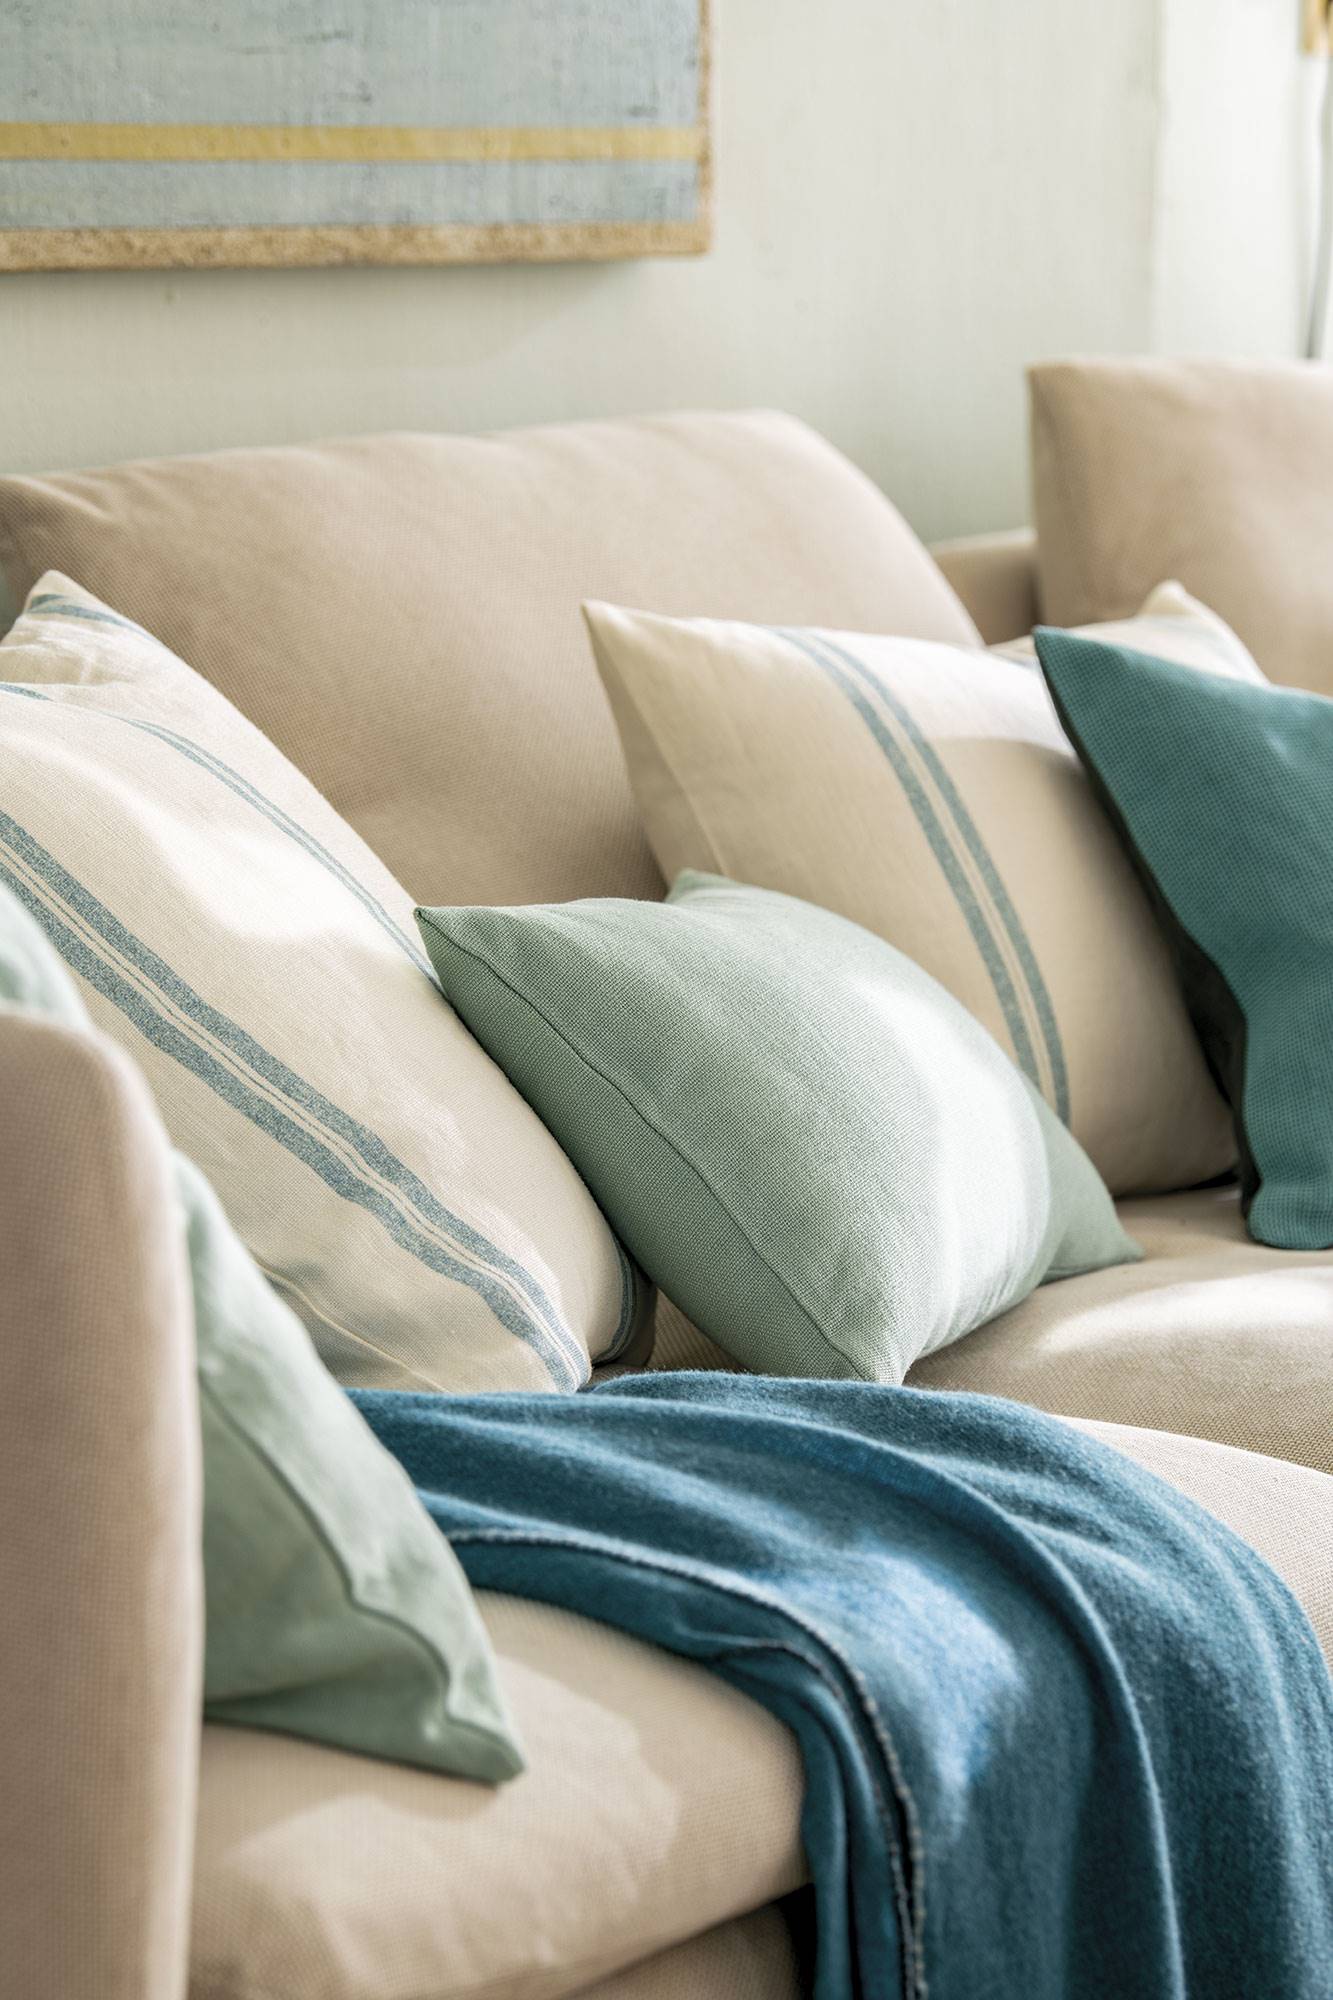 Cojines en tonos mint y turquesa sobre el sofá.